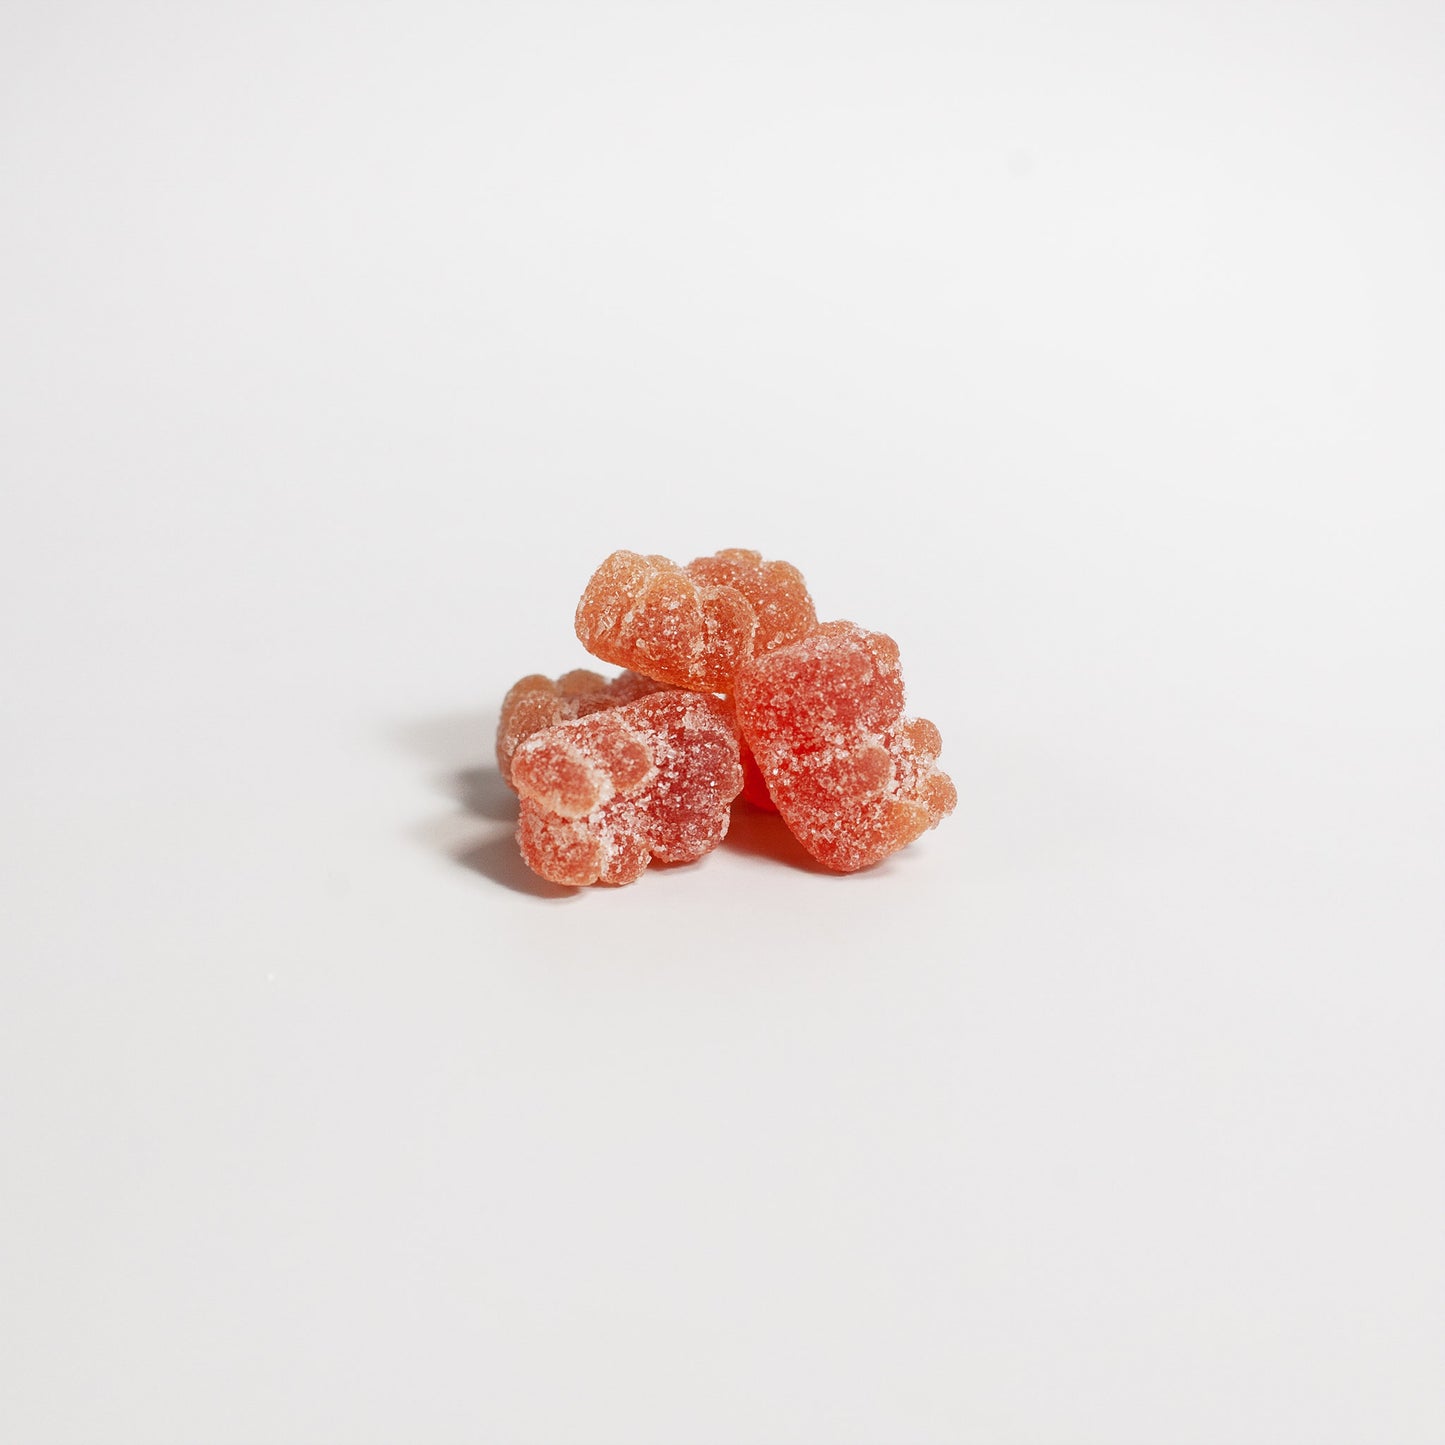 Multivitamin Bear Gummies - Strawberry Flavoured